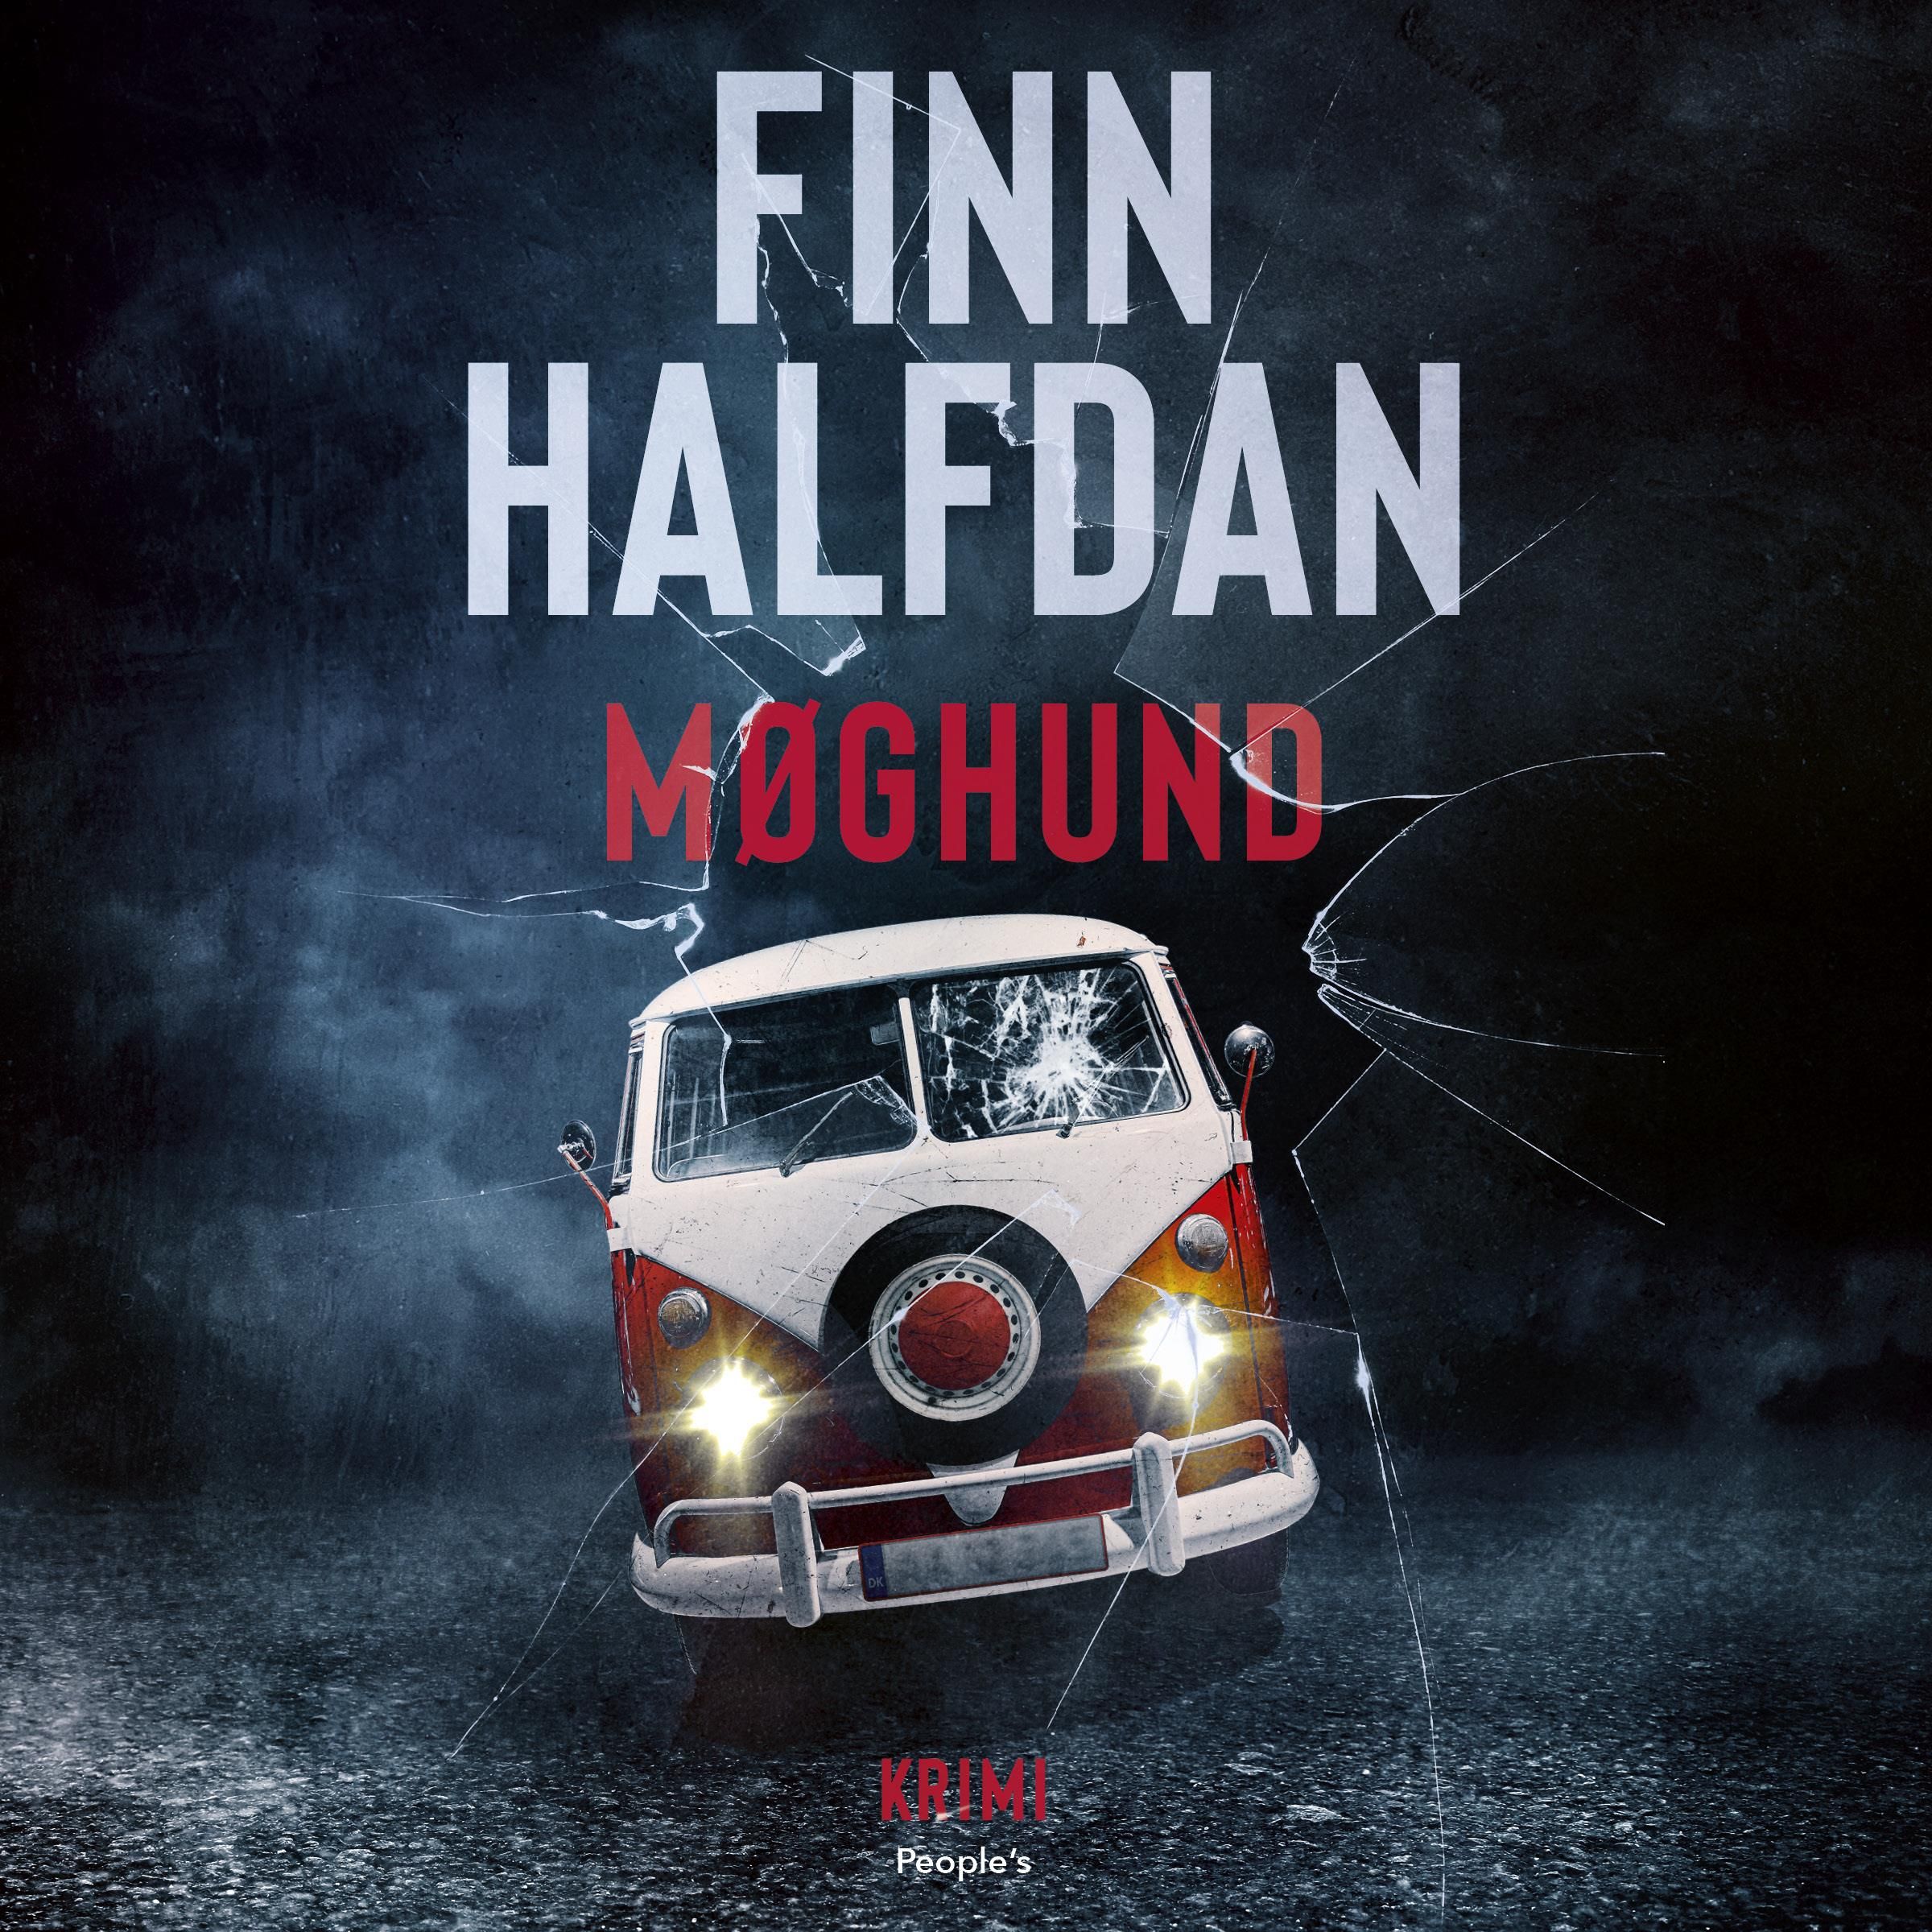 Møghund, audiobook by Finn Halfdan